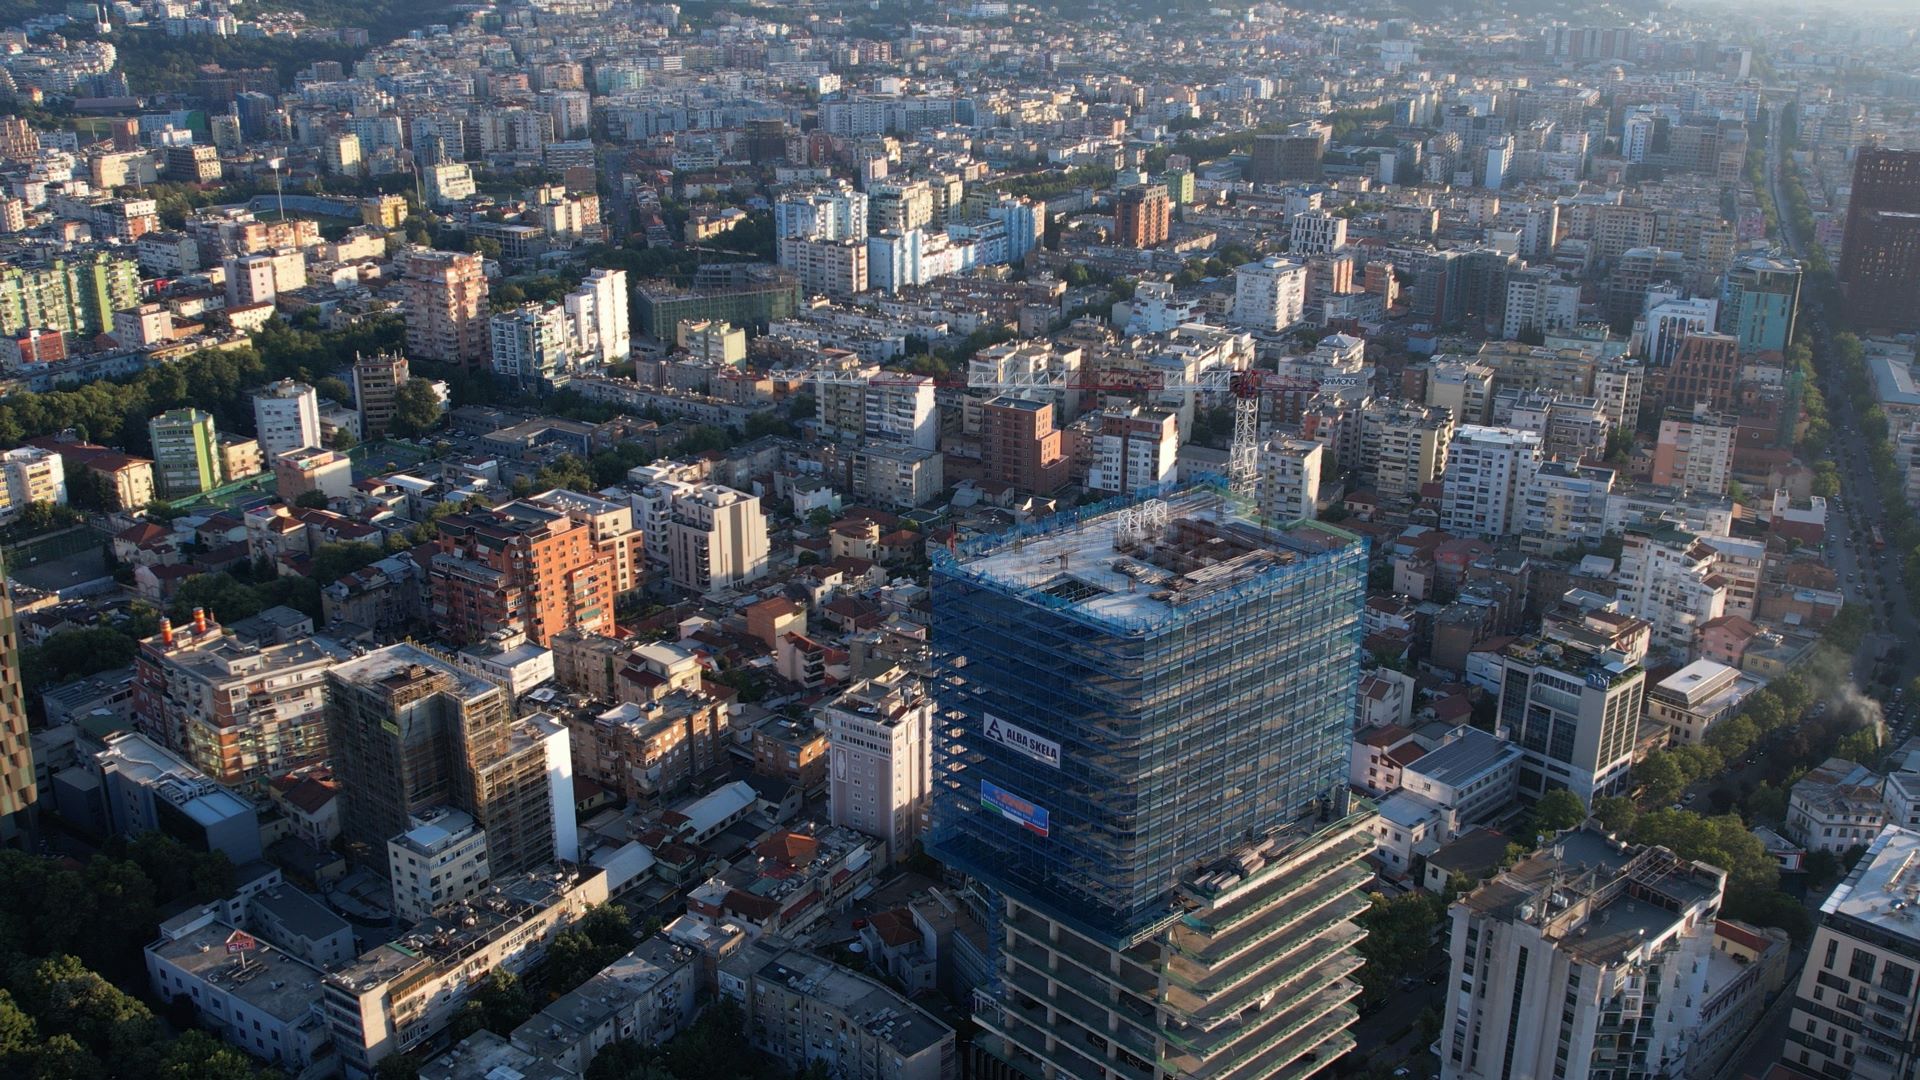 Qendra e Tiranës e fotografuar me dron | Foto: Xhemali Moku/BIRN